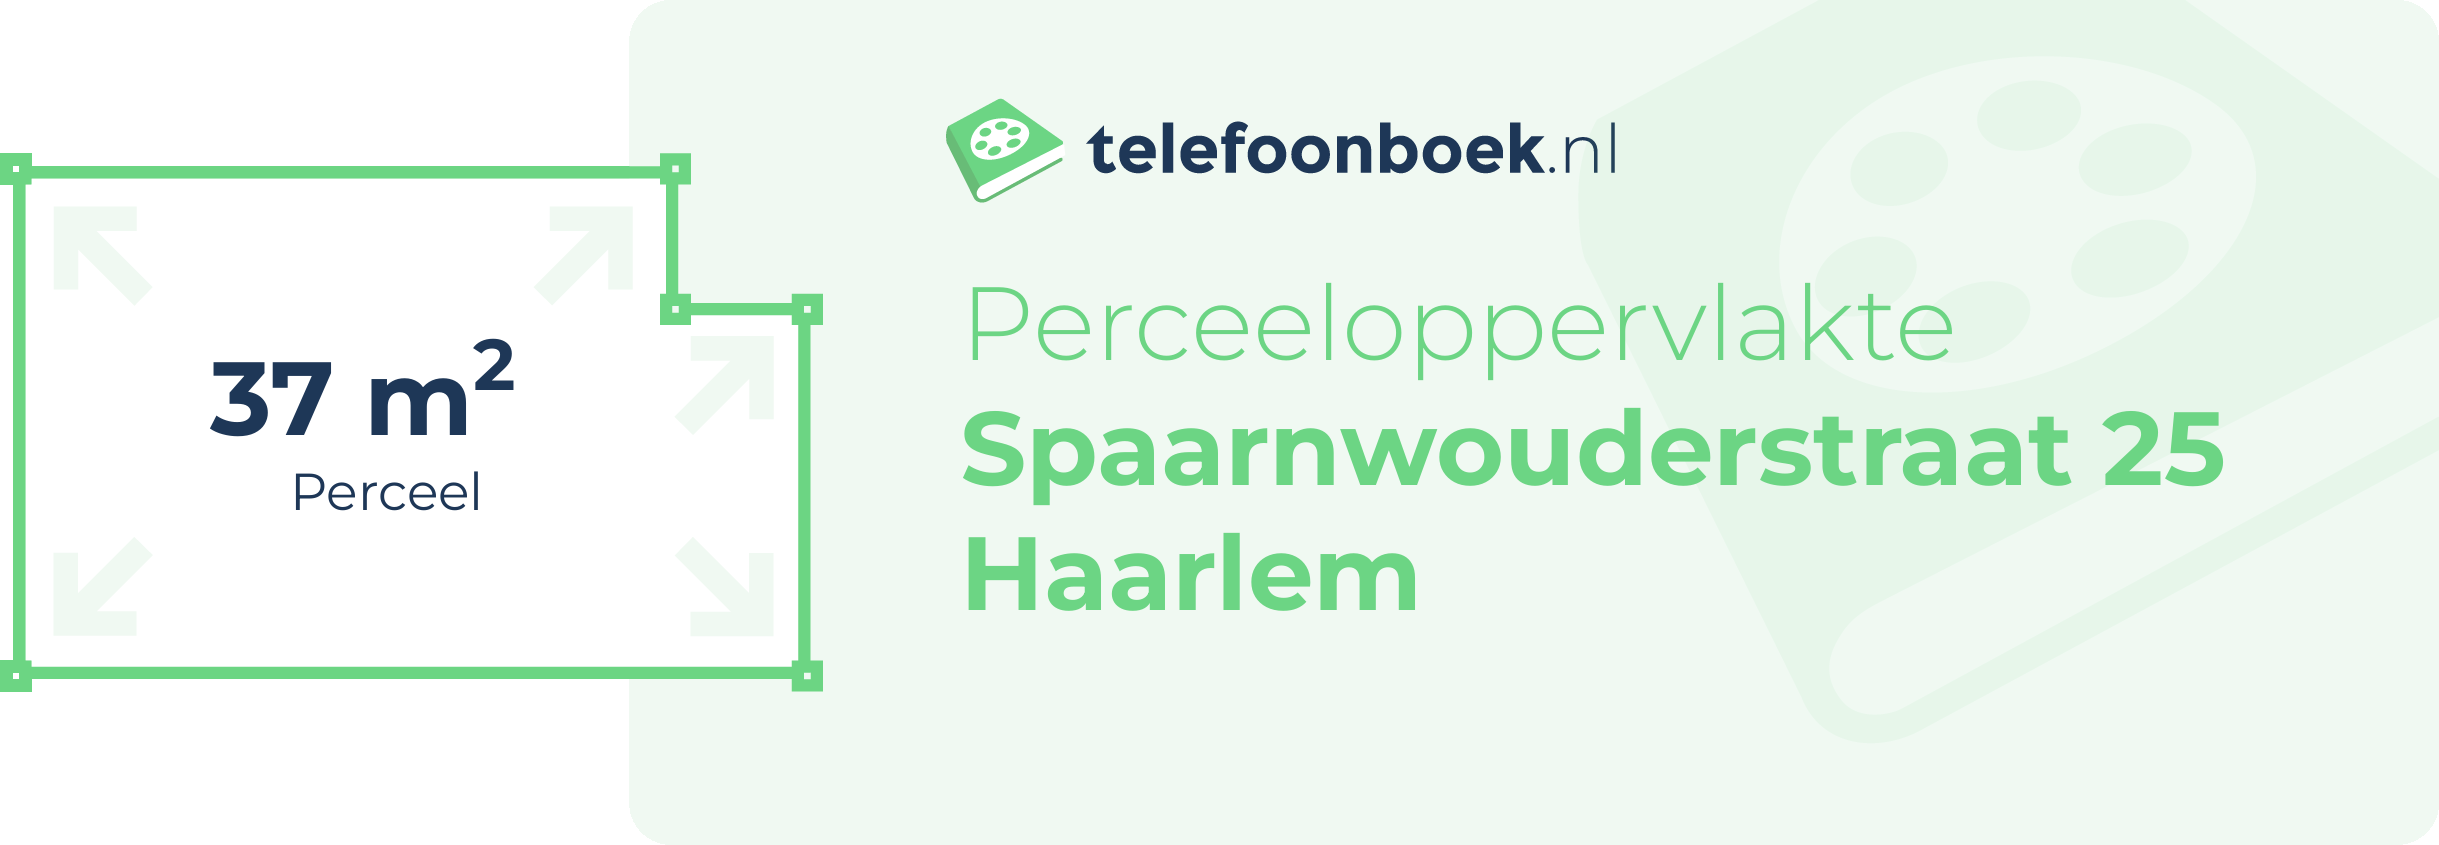 Perceeloppervlakte Spaarnwouderstraat 25 Haarlem